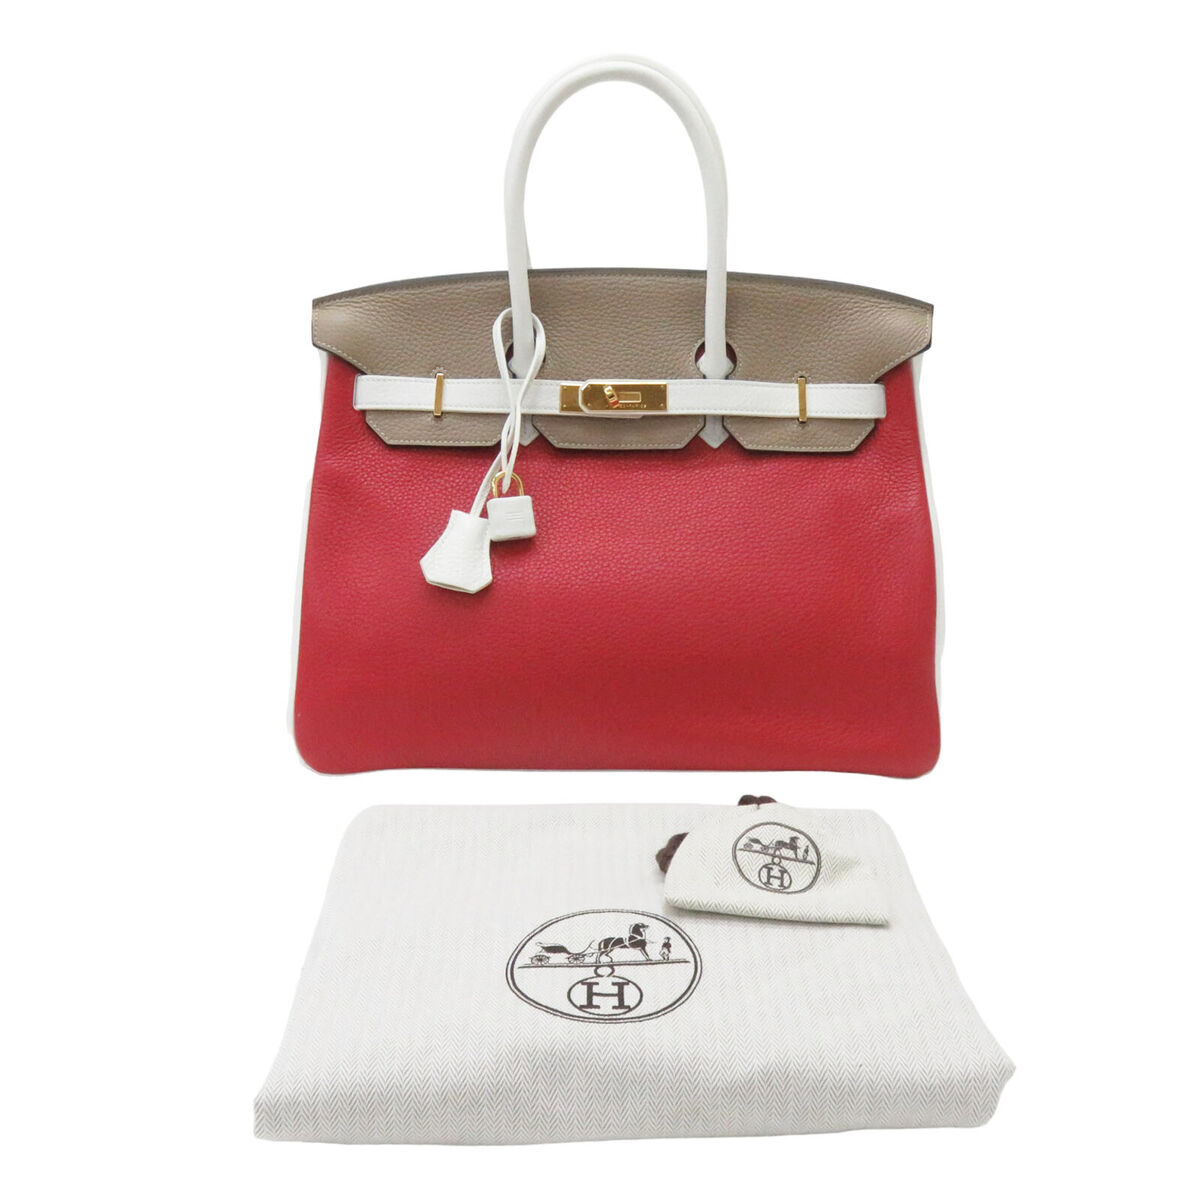 HERMES Birkin 35 Handbag Etoupe Blanc Rouge Casaque Togo Leather Special  Order